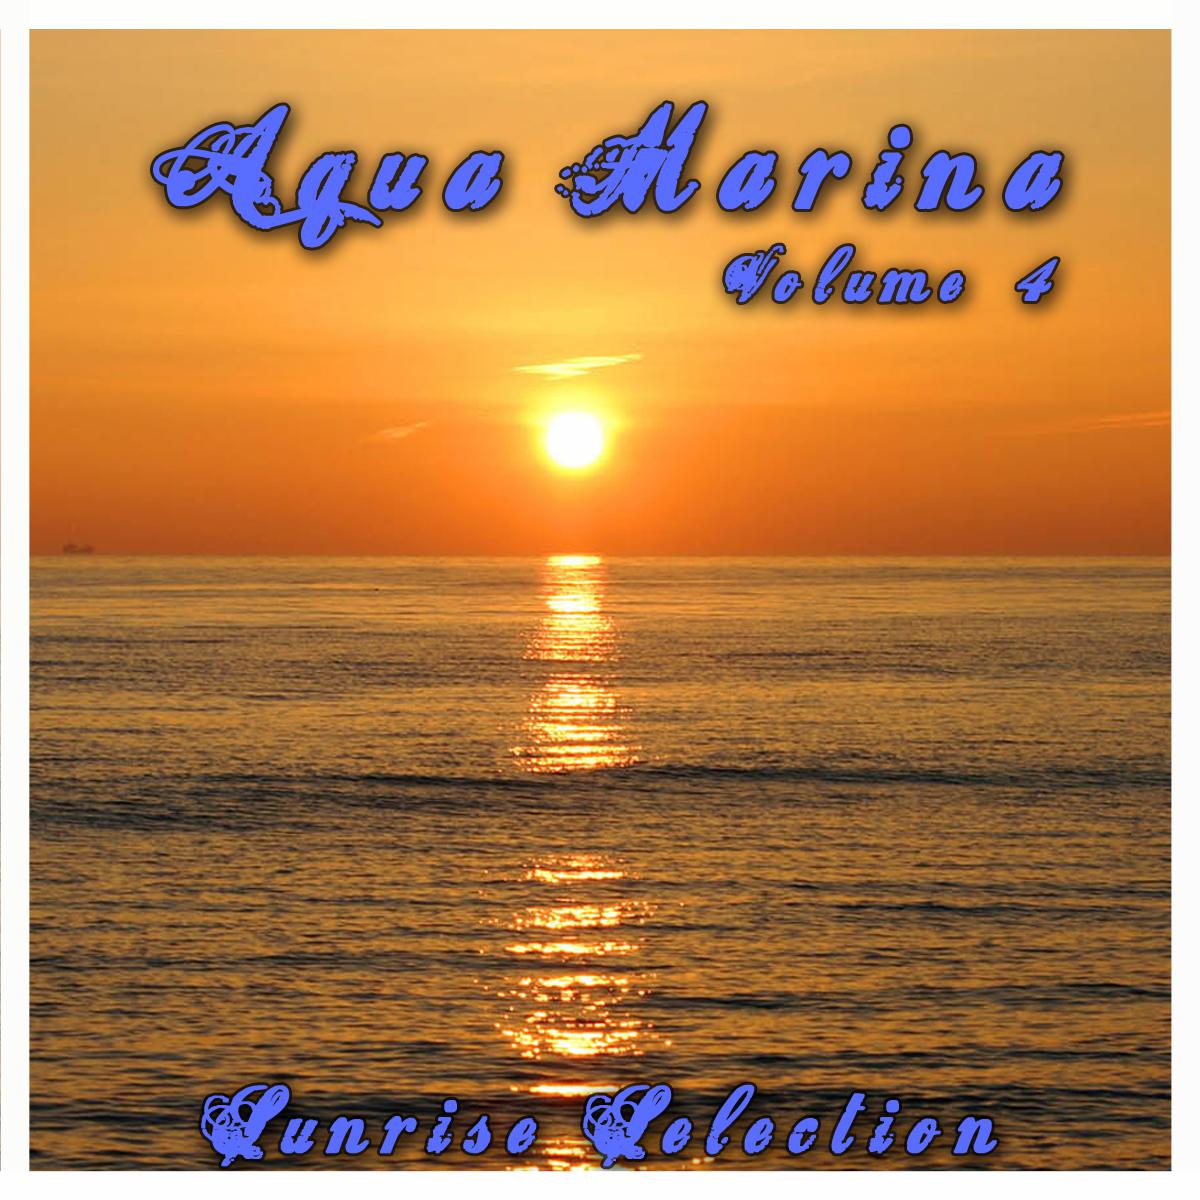 Aqua Marina 4 - The Sunrise Selection